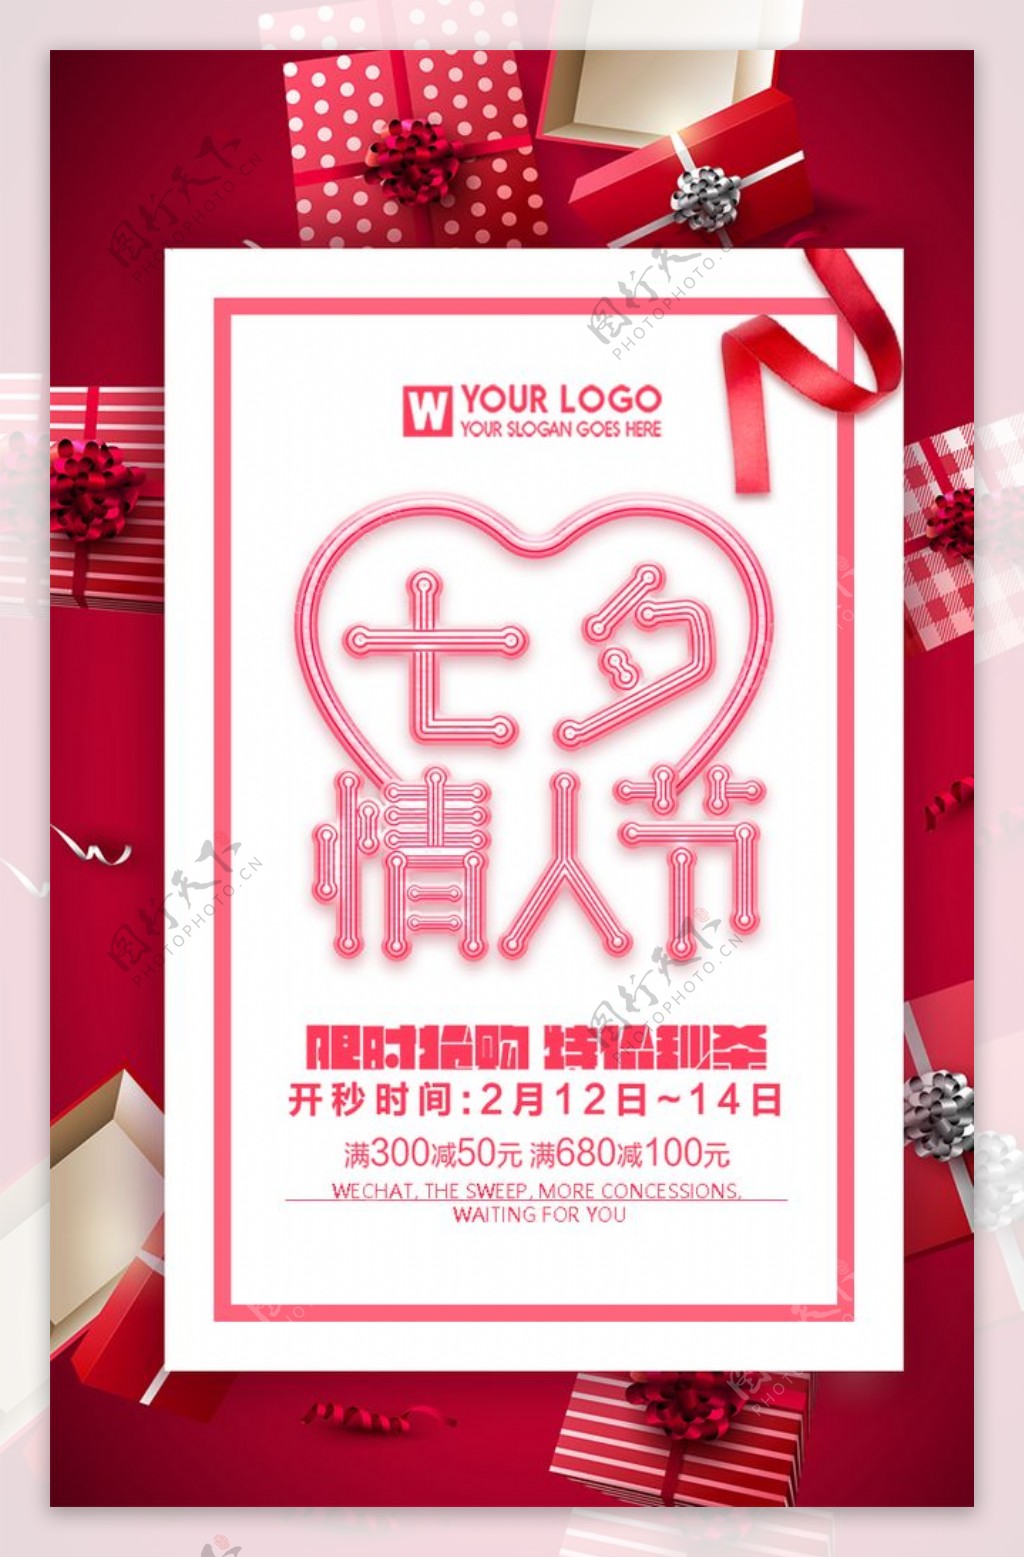 七夕情人节节日促销海报设计